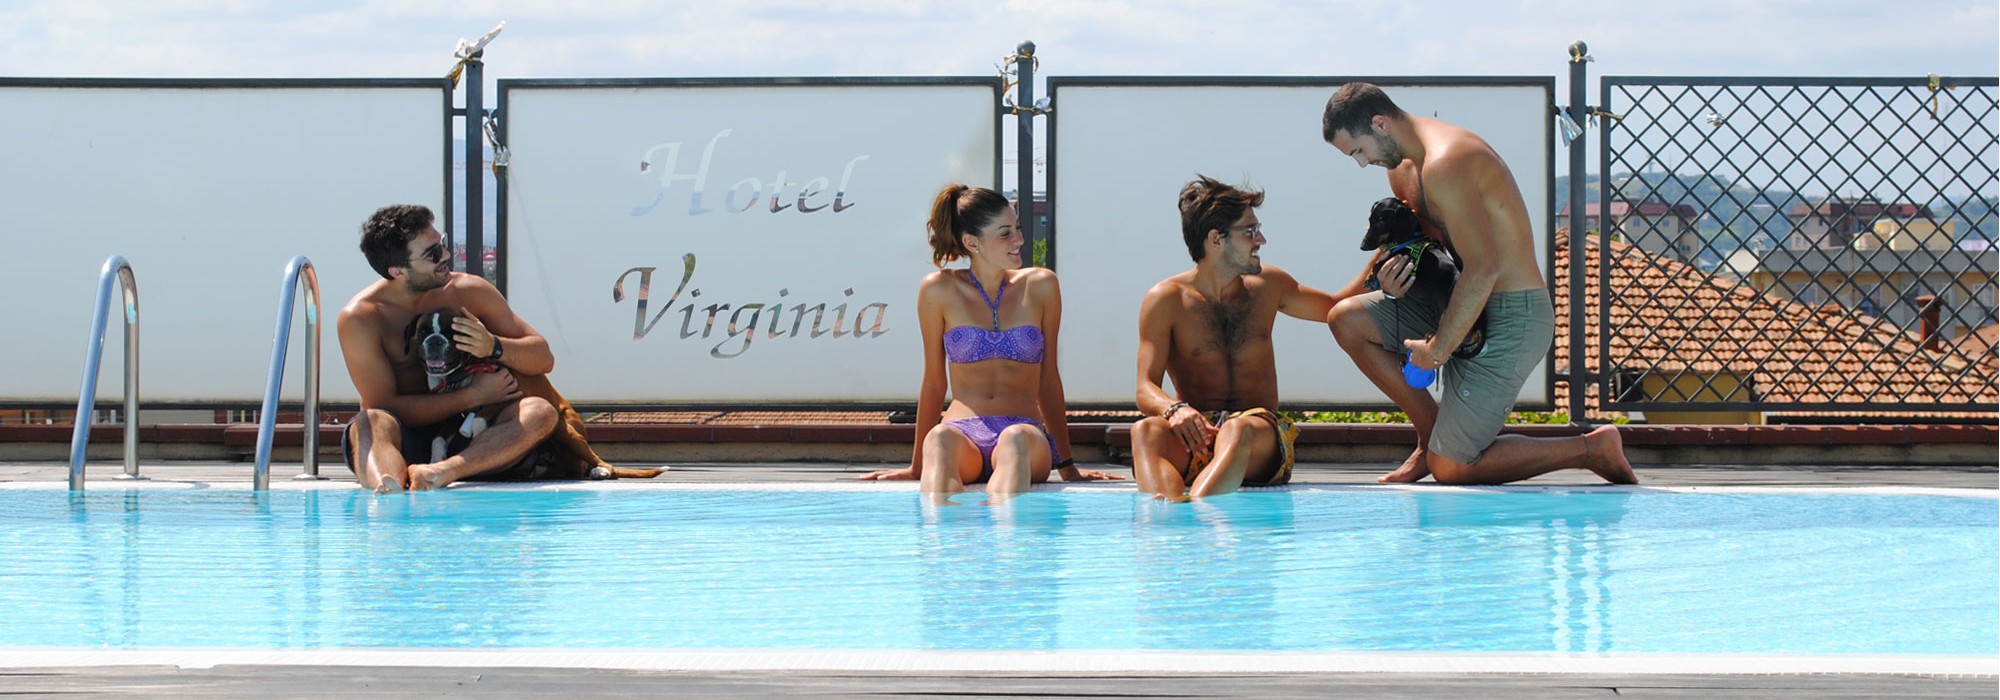 hotel piscina virginia